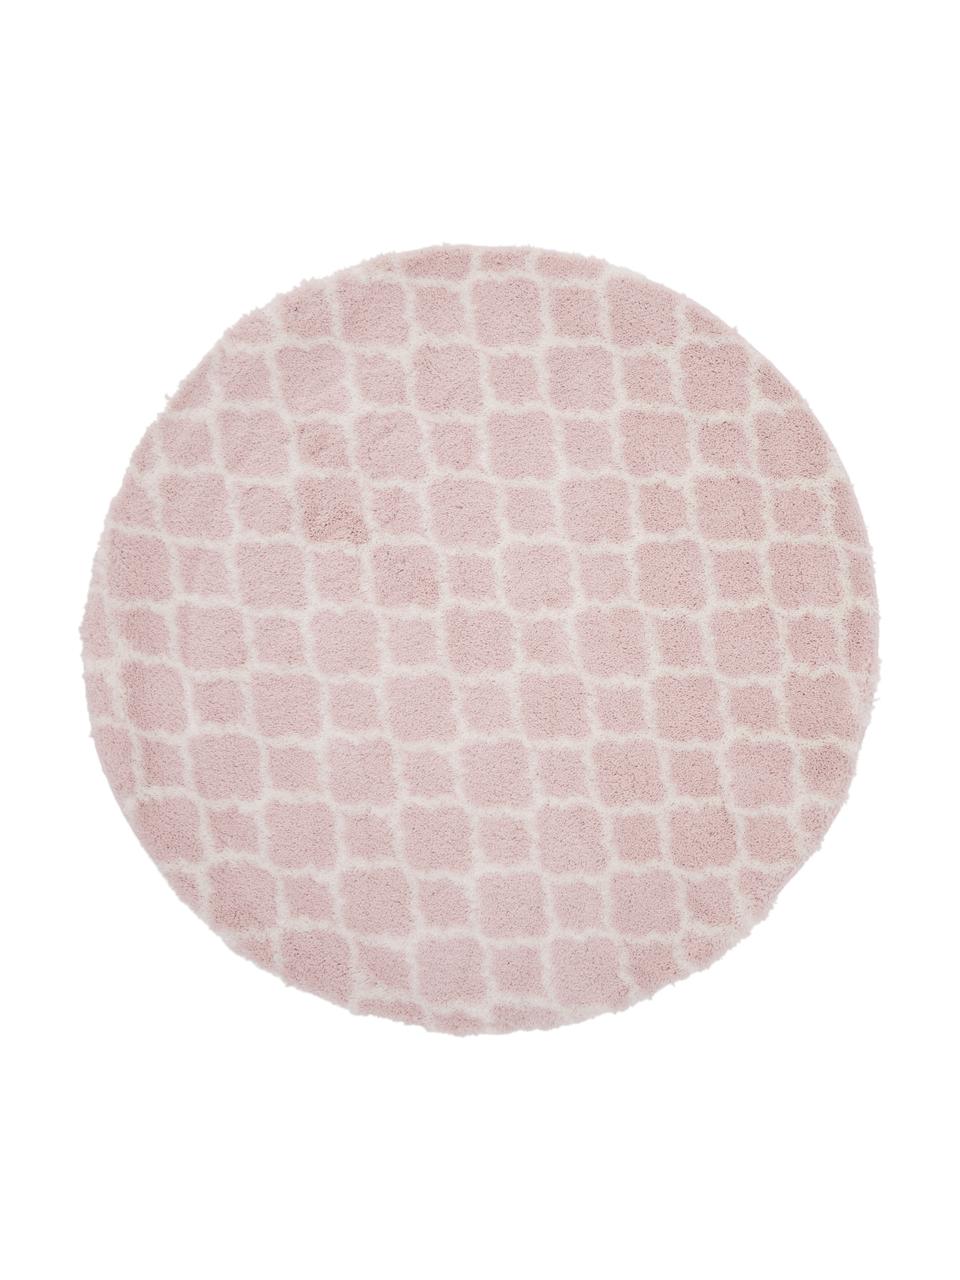 Runder Hochflor-Teppich Mona in Altrosa/Creme, Flor: 100% Polypropylen, Altrosa, Cremeweiß, Ø 150 cm (Größe M)